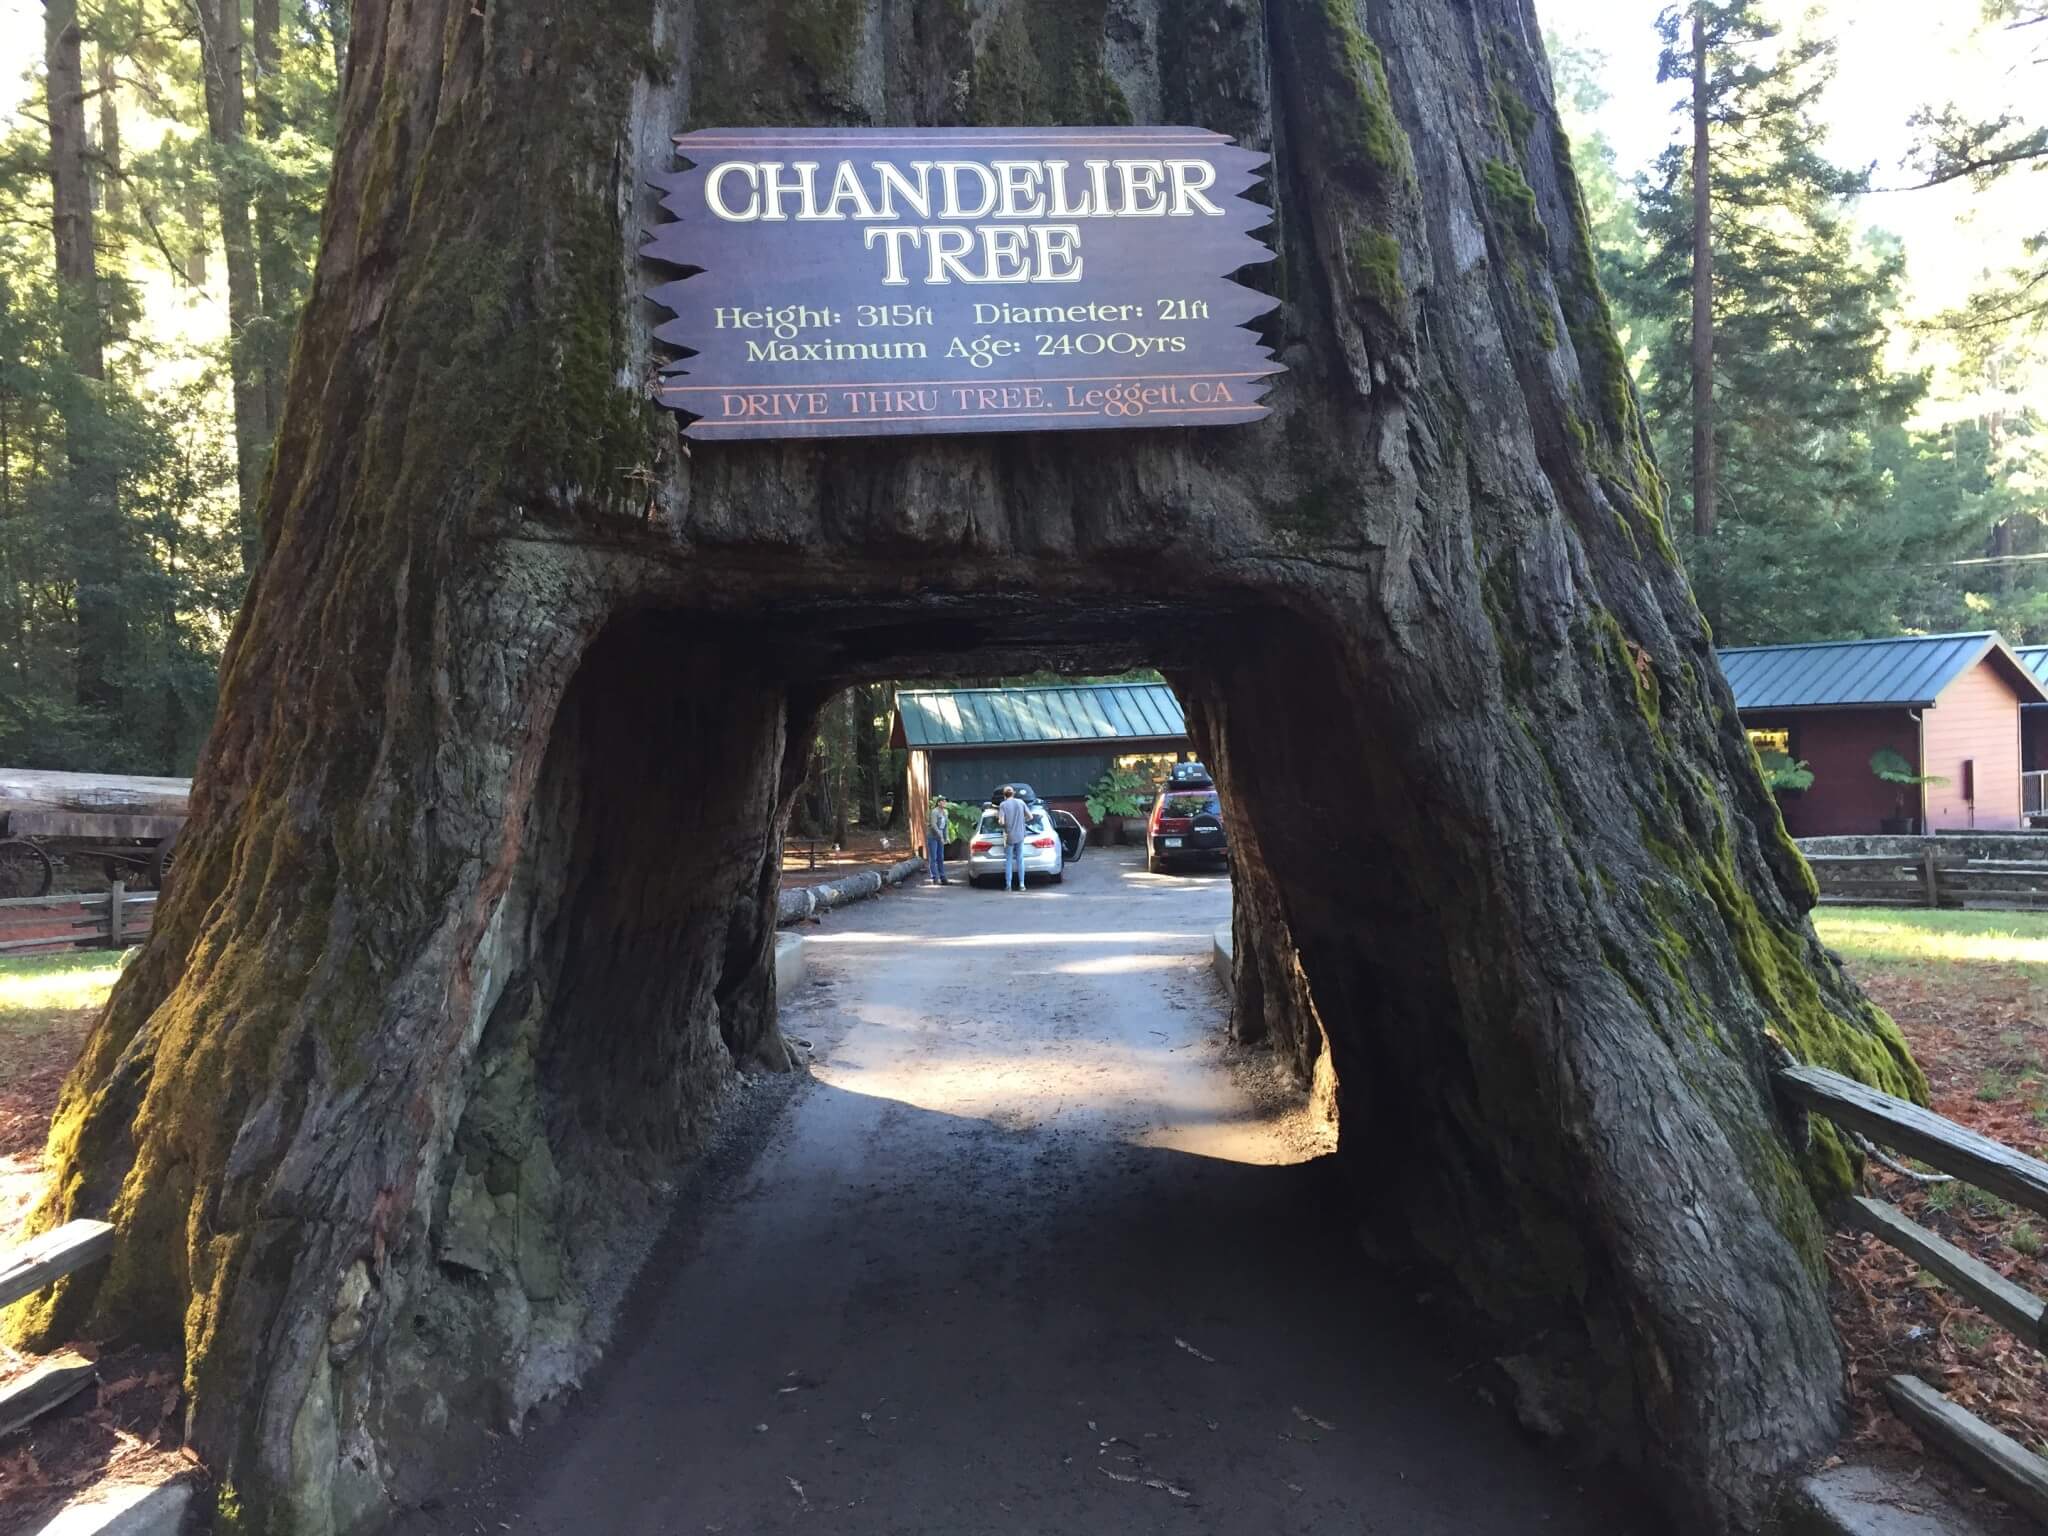 Chandelier Tree er 315 fod højt og ca. 2400 år gammelt. Man kan køre gennem træet – dog ikke i en autocamper. Træet har rødder ved Leggett i den sydlige ende af Avenue of the Giants.